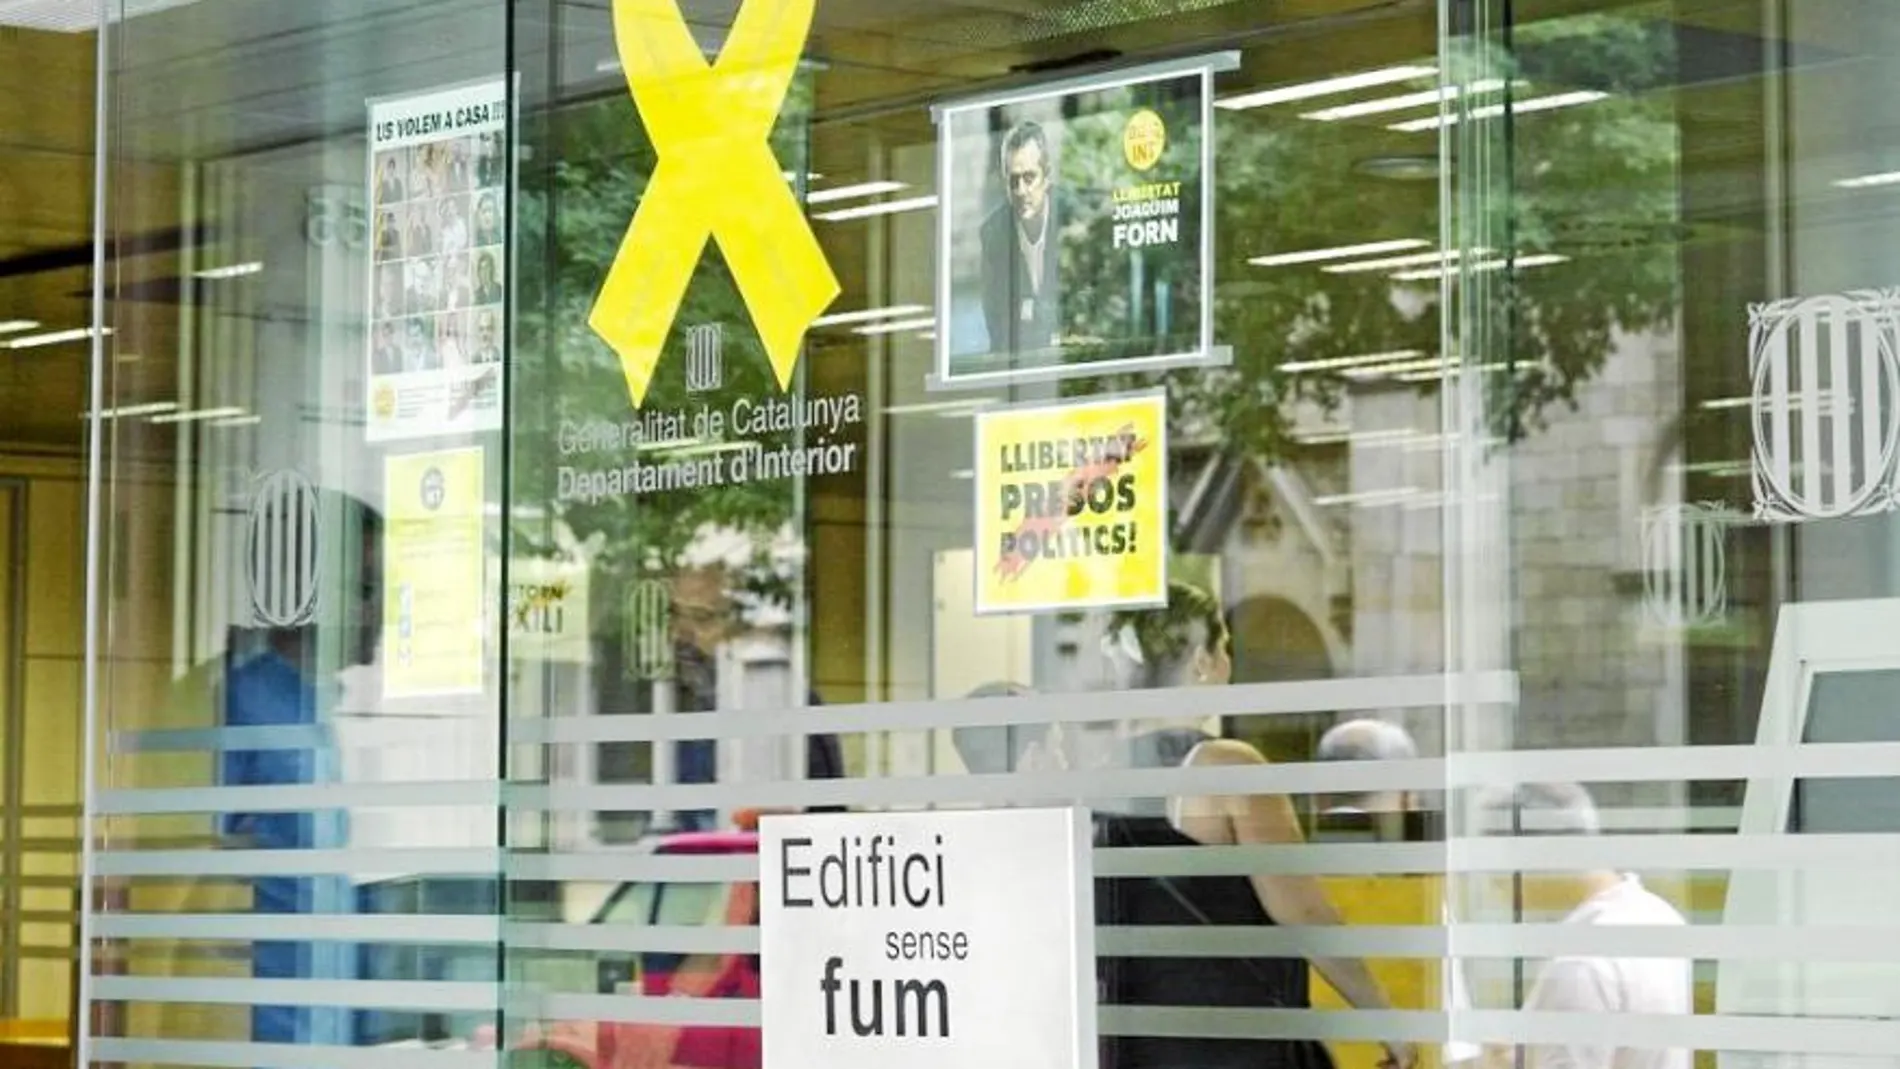 Los soberanistas colocan lazos amarillos y carteles a favor de los presos en edificios públicos